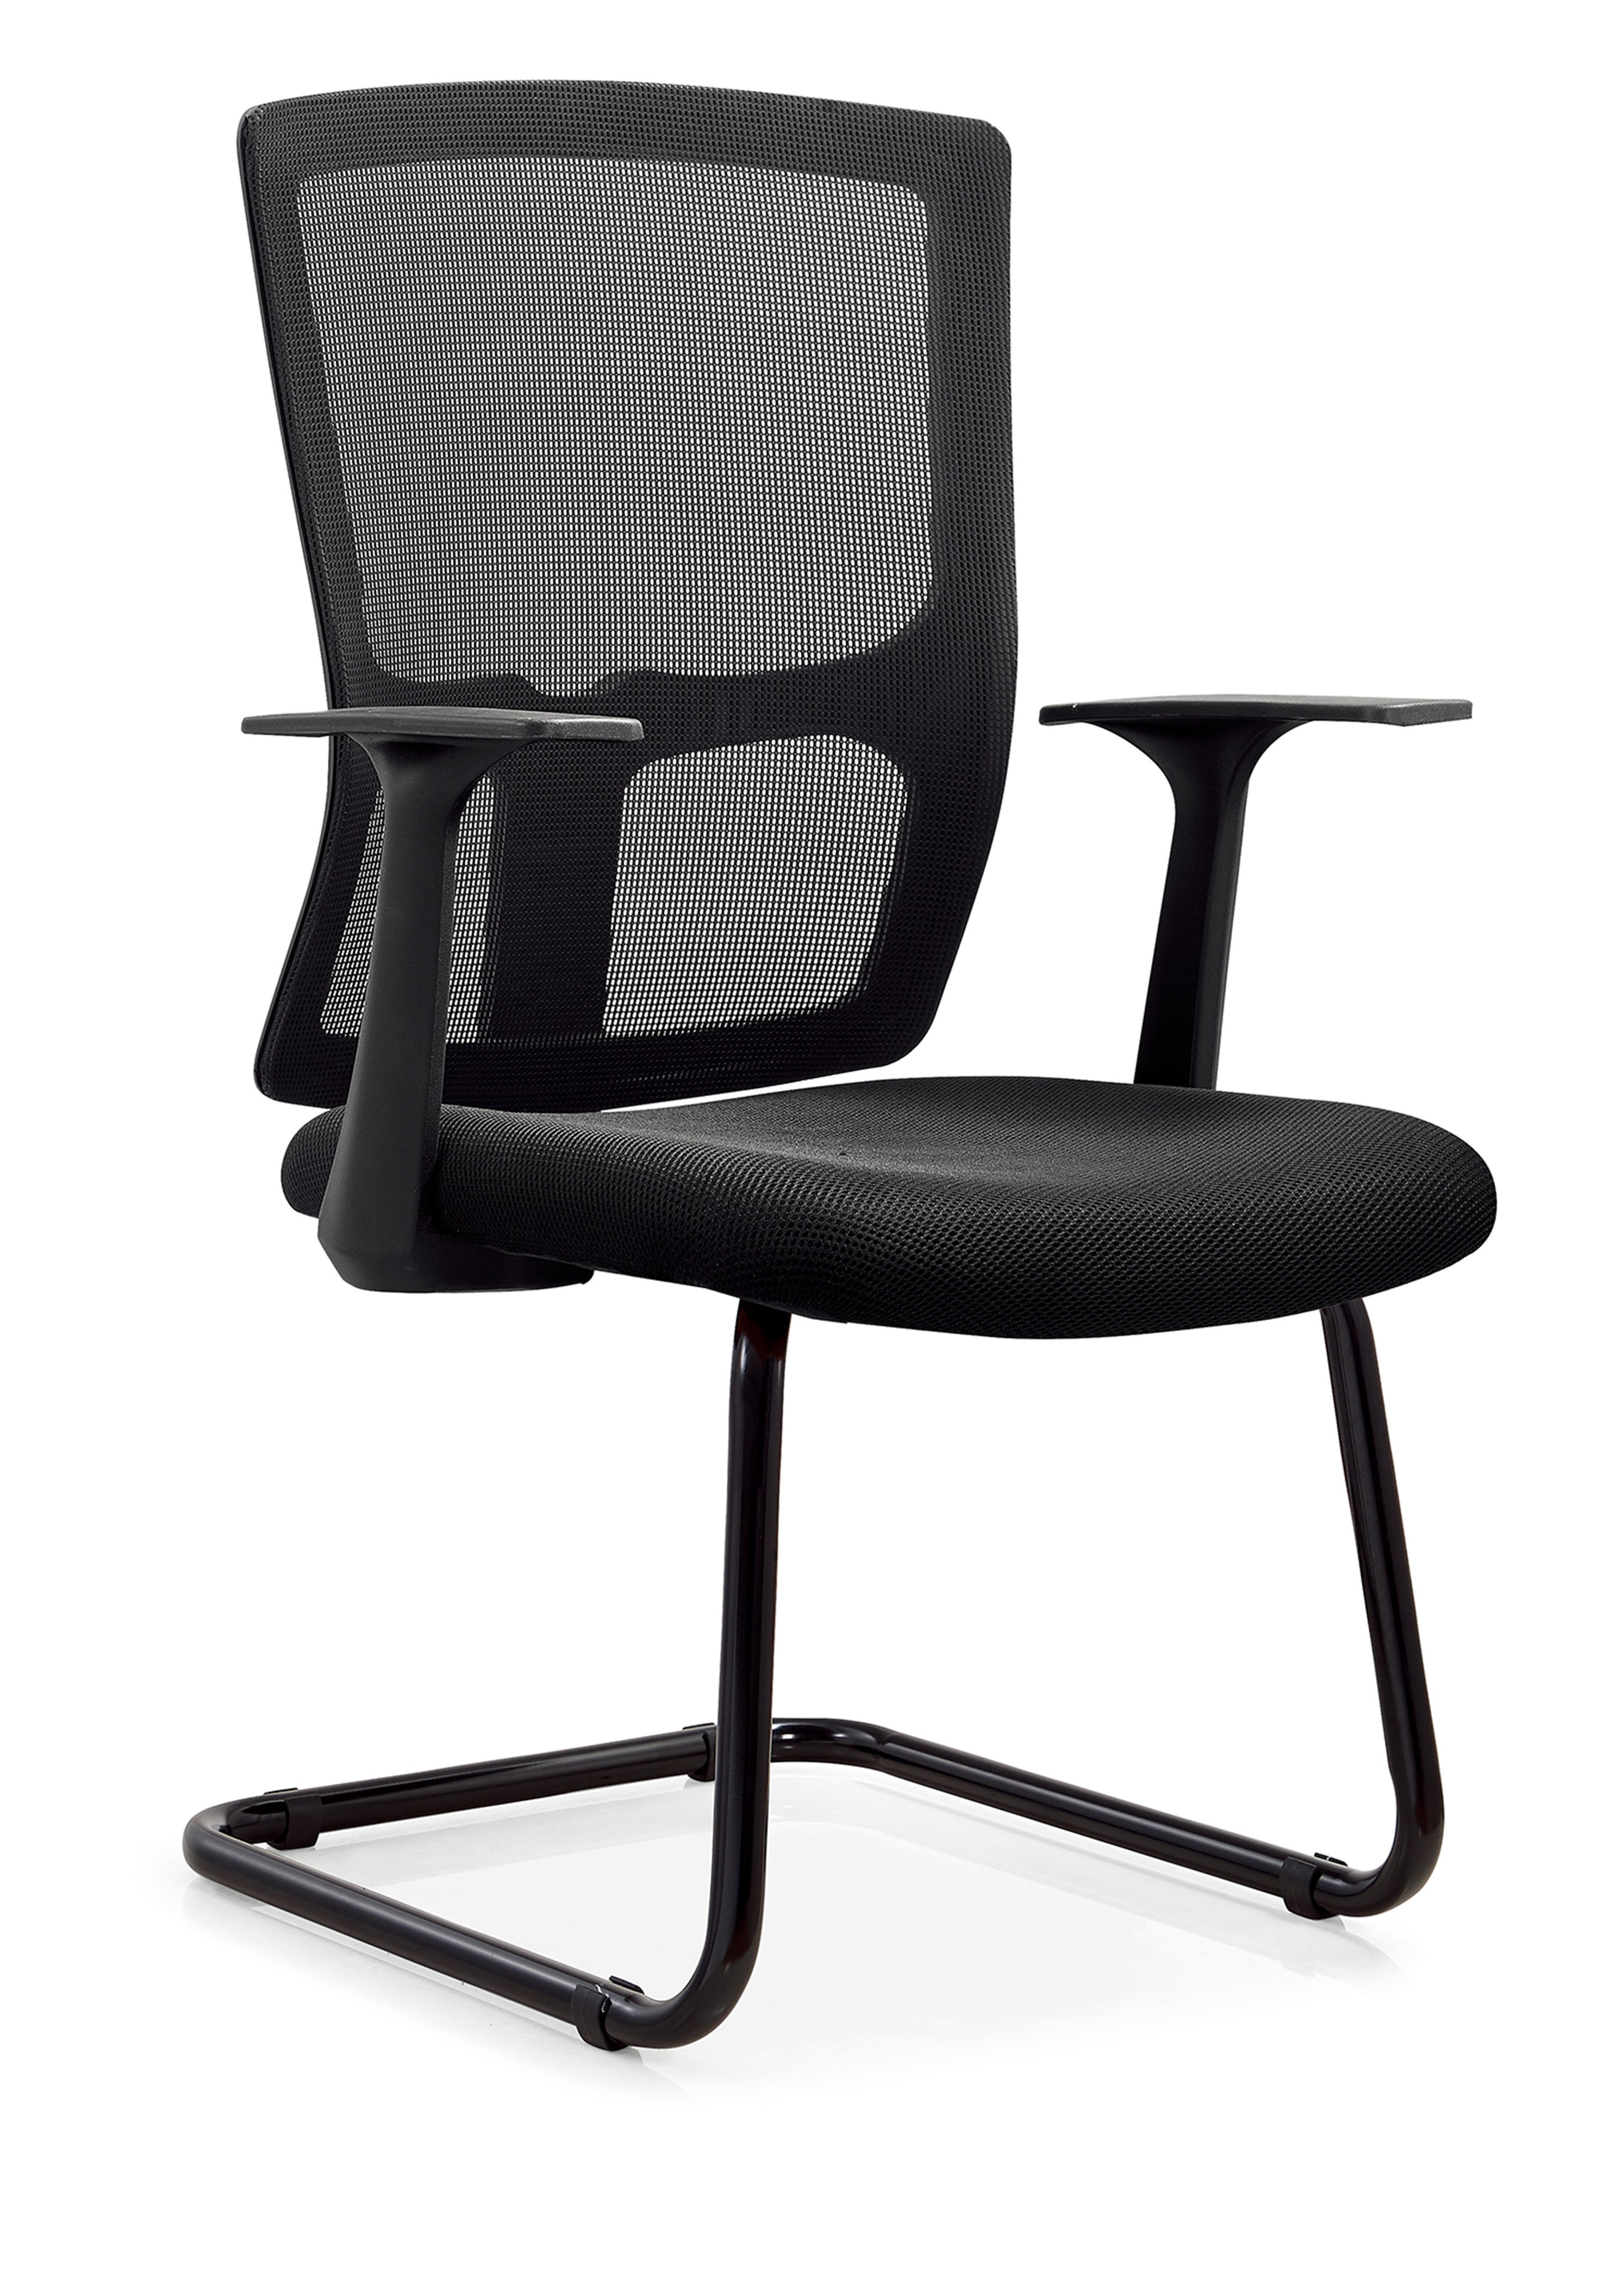 Newcity 524B Vendas Diretas Econômicas Novo Design Cadeira de Conferência de Escritório em Malha Melhor Qualidade Colorida Personalizada com Costas Médias Premium Fornecedor de Cadeira de Malha Foshan China